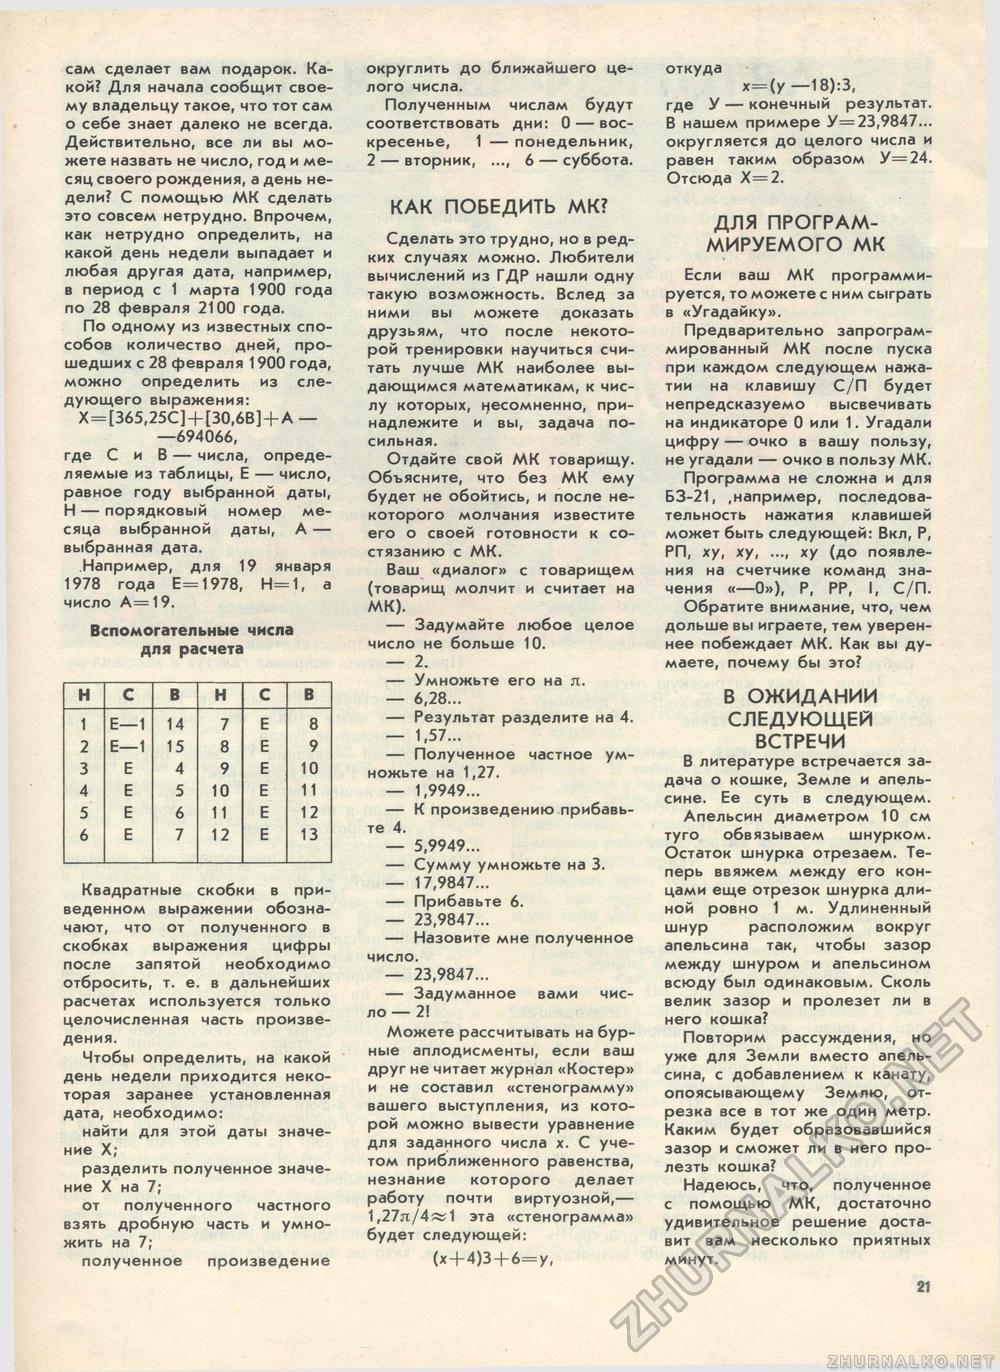  1985-09,  27